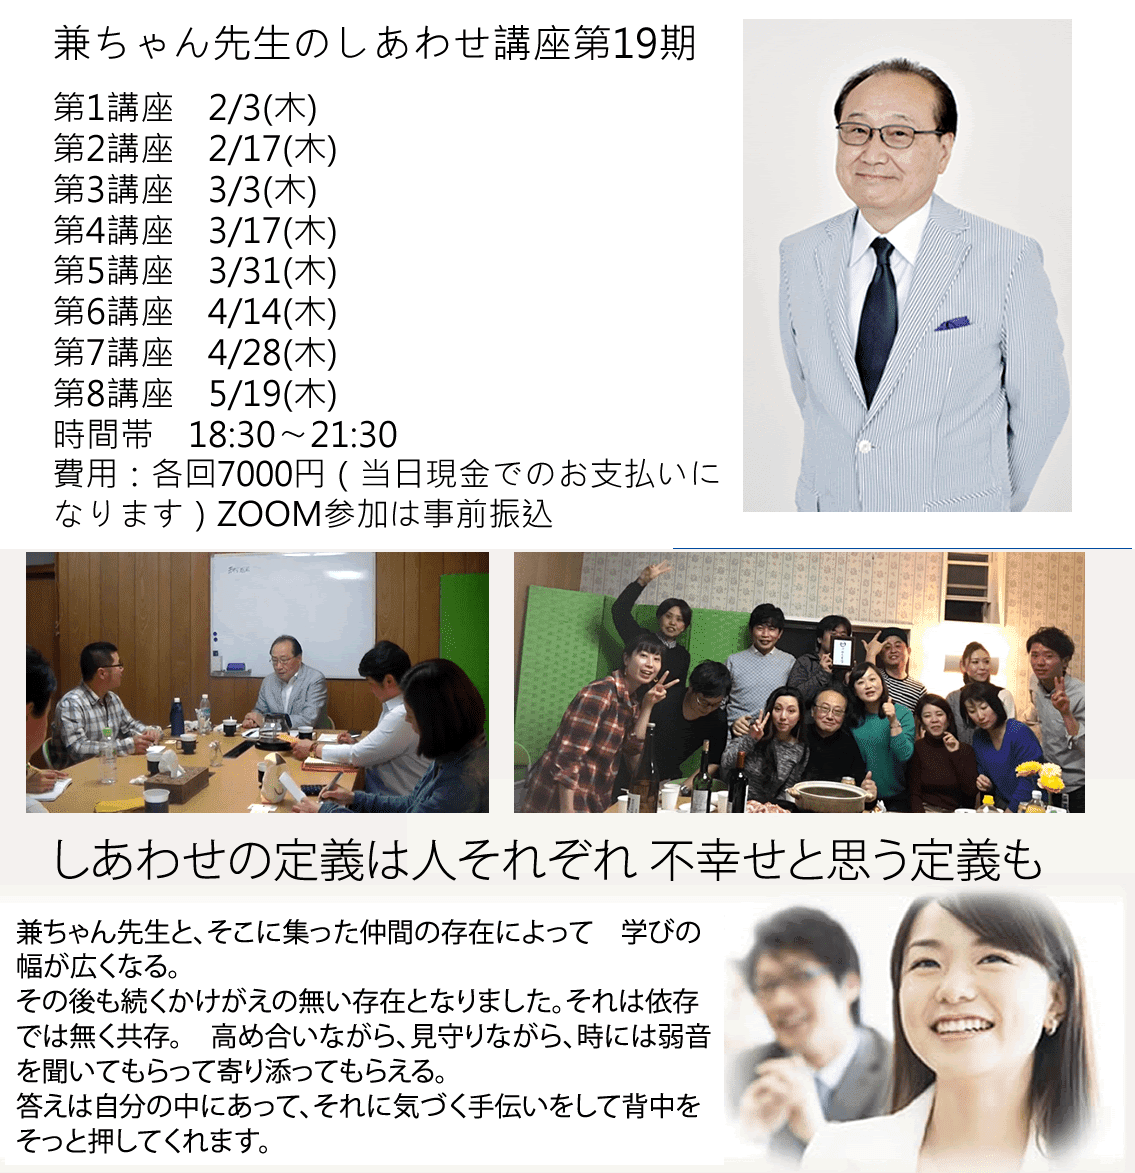 ss19 - 兼ちゃん先生のしあわせ講座第19期